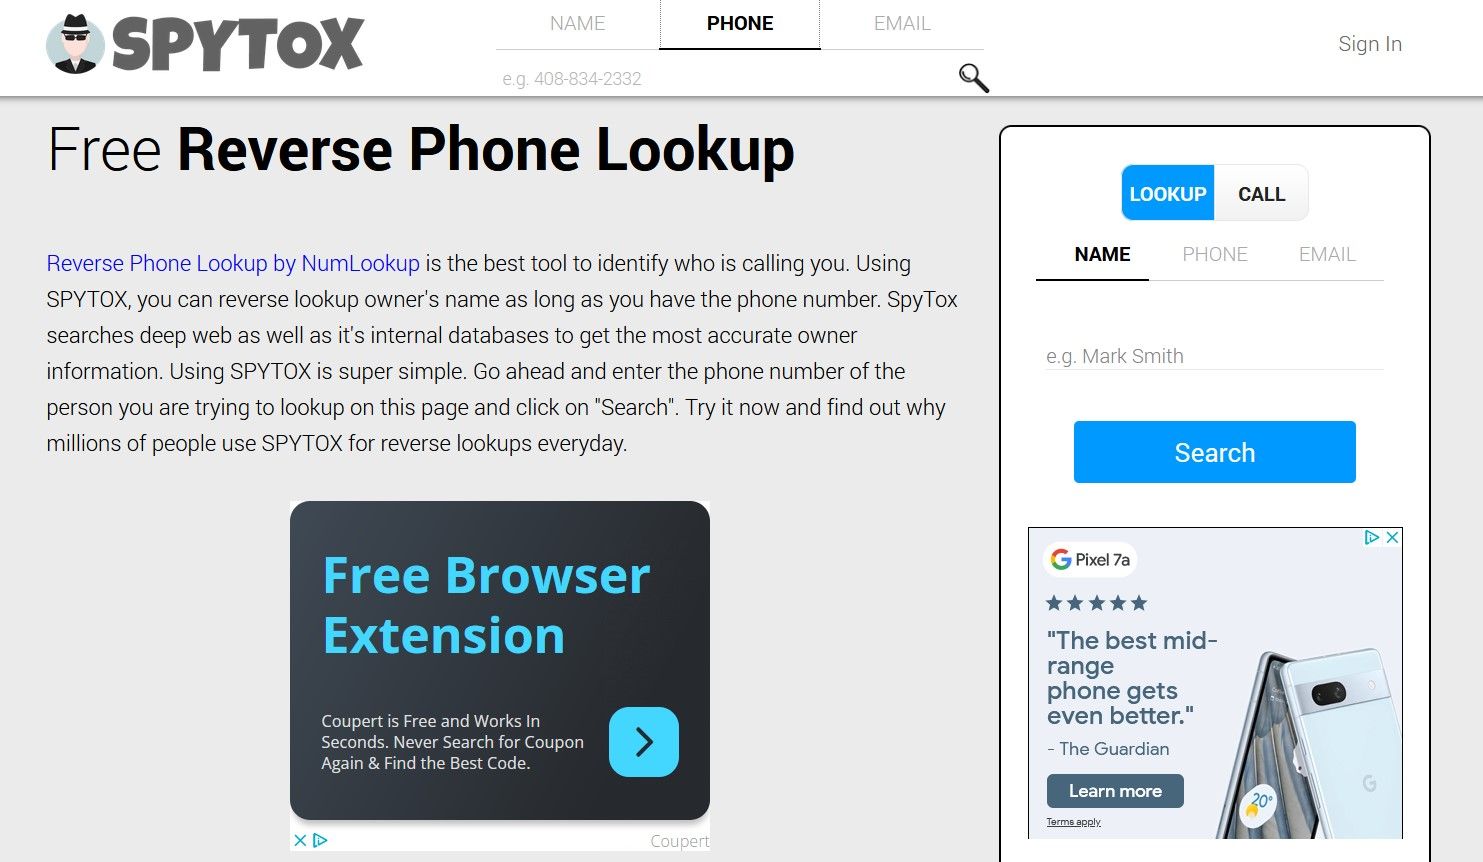 Free Reverse Phone Lookup Tool on Spytox